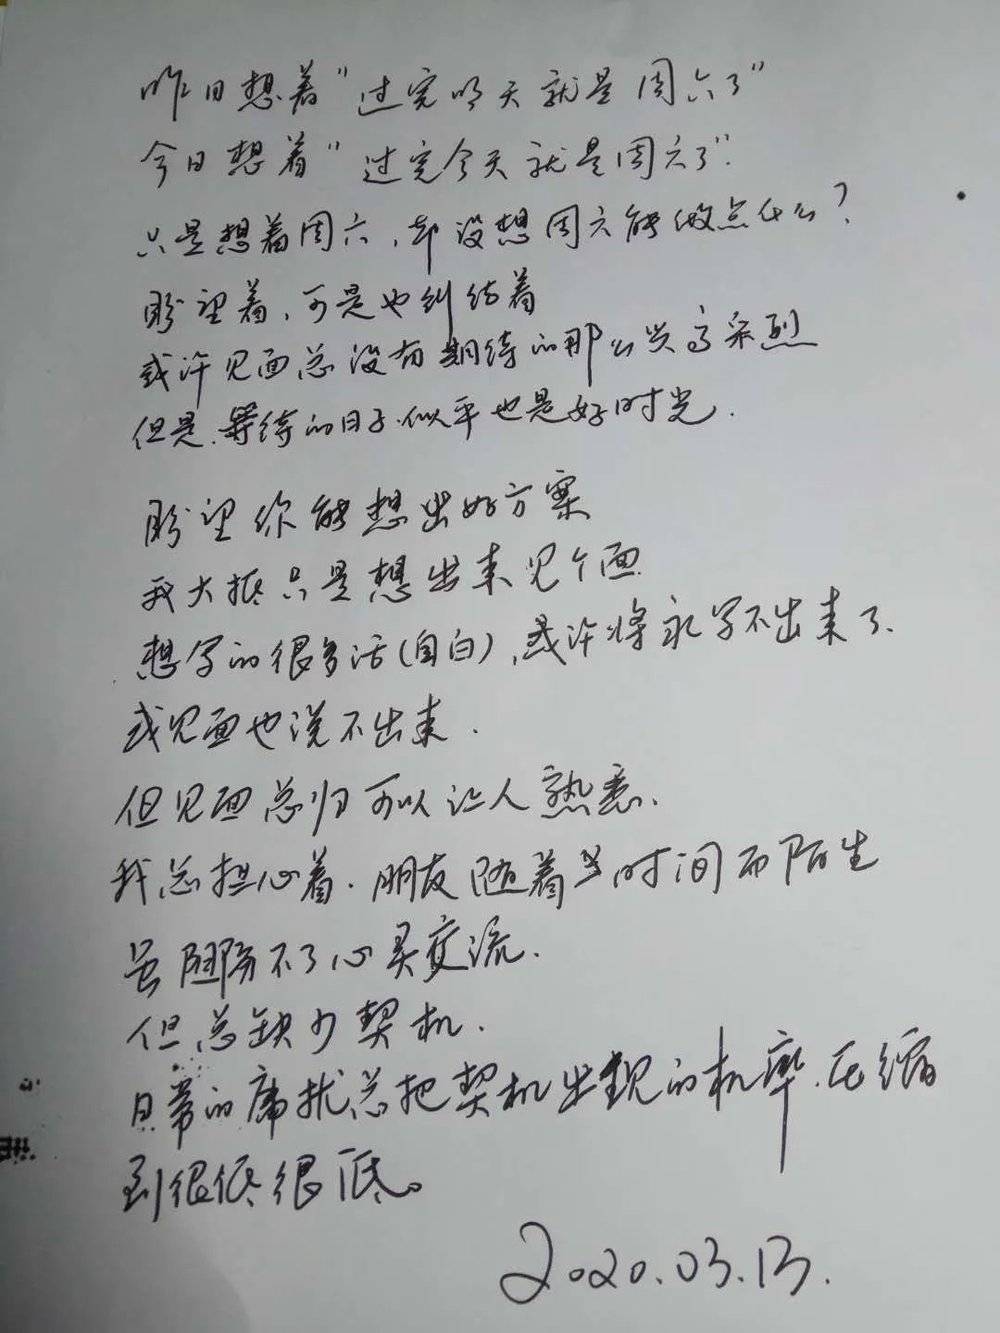 王老师写给海娜的信。